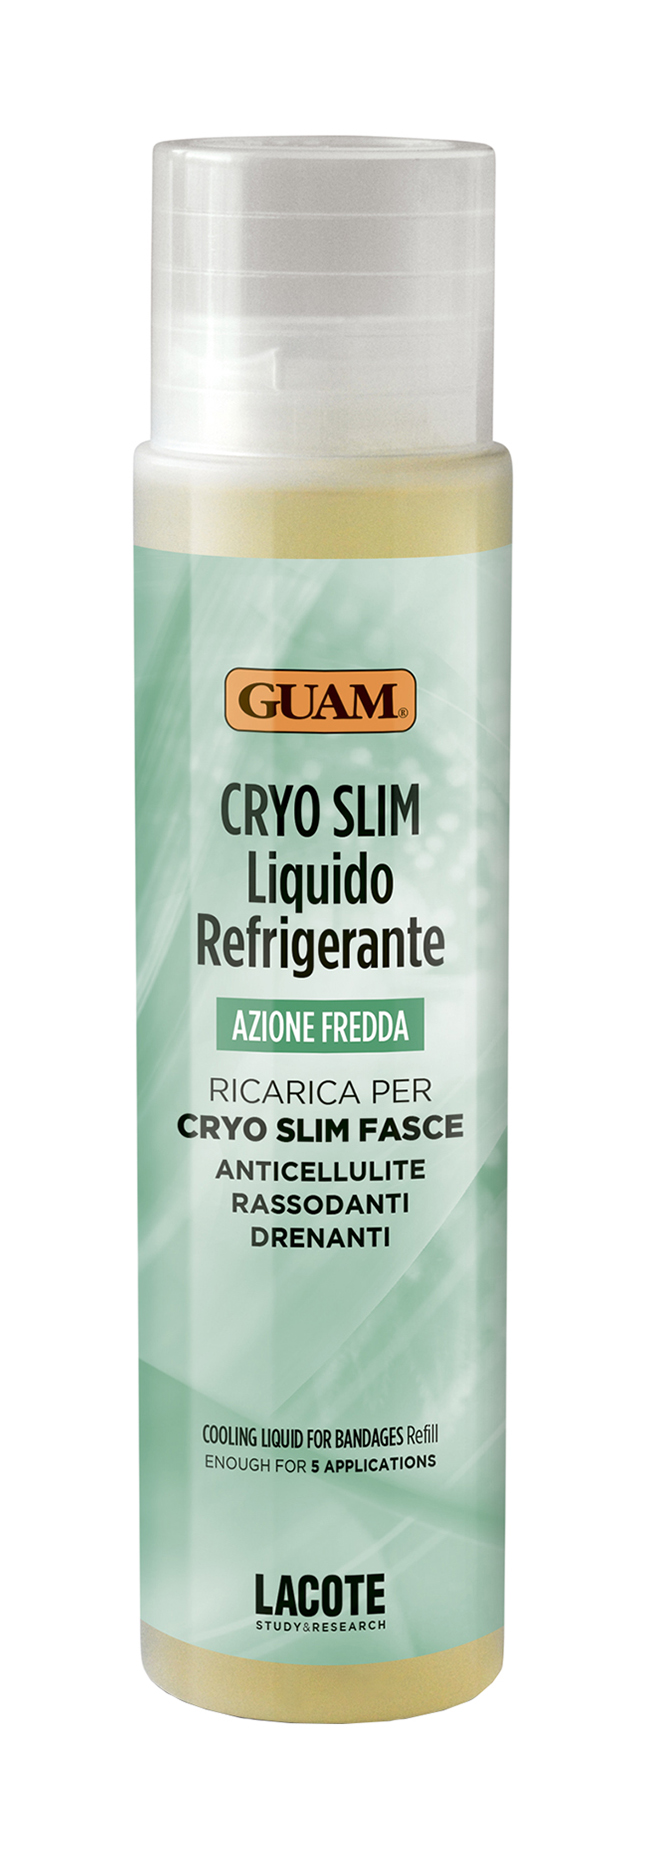 Жидкость для проведения процедуры бинтования Guam Azione Fredda Cryo Slim Fasce 250мл дополнительный флакон жидкость от мух и комаров на 585 часов chameleon 45 мл